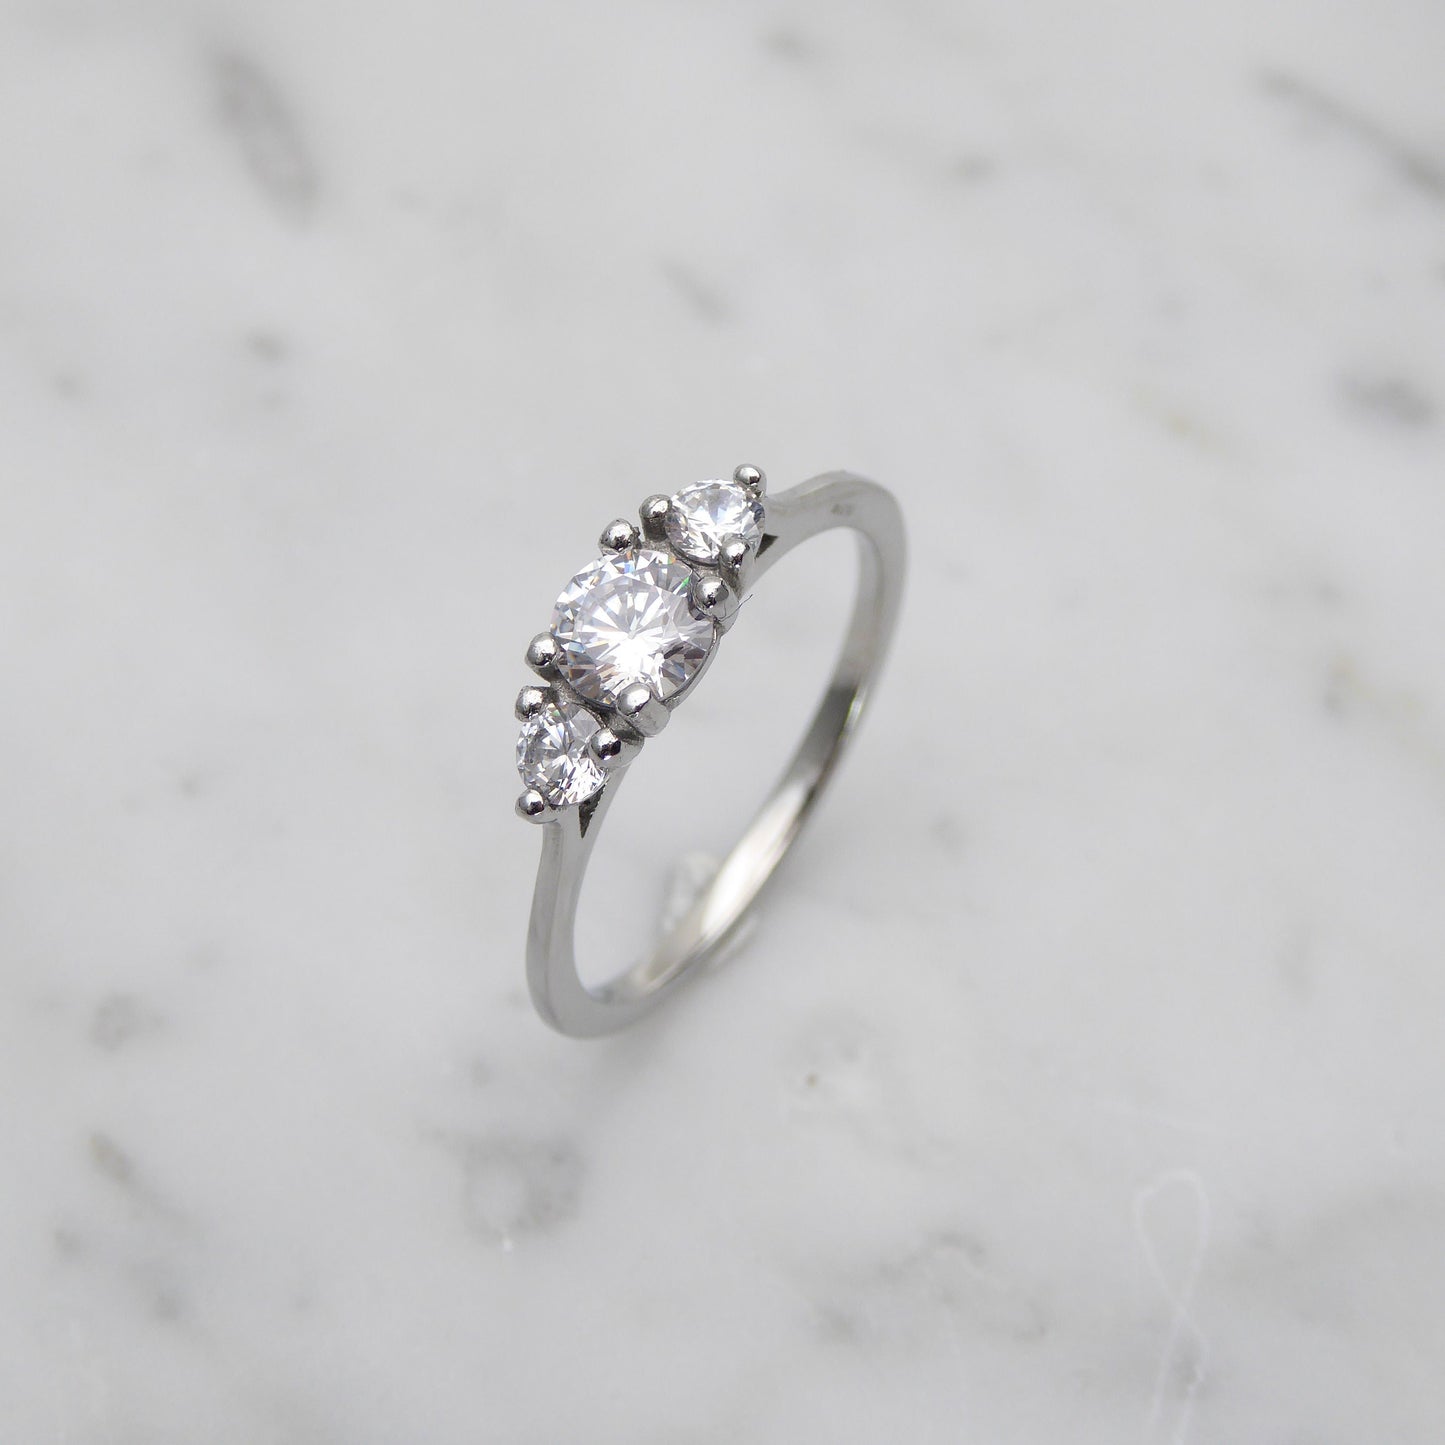 Genuine moissanite Bridal Ring Set in White Gold or Titanium  - engagement ring - handmade ring